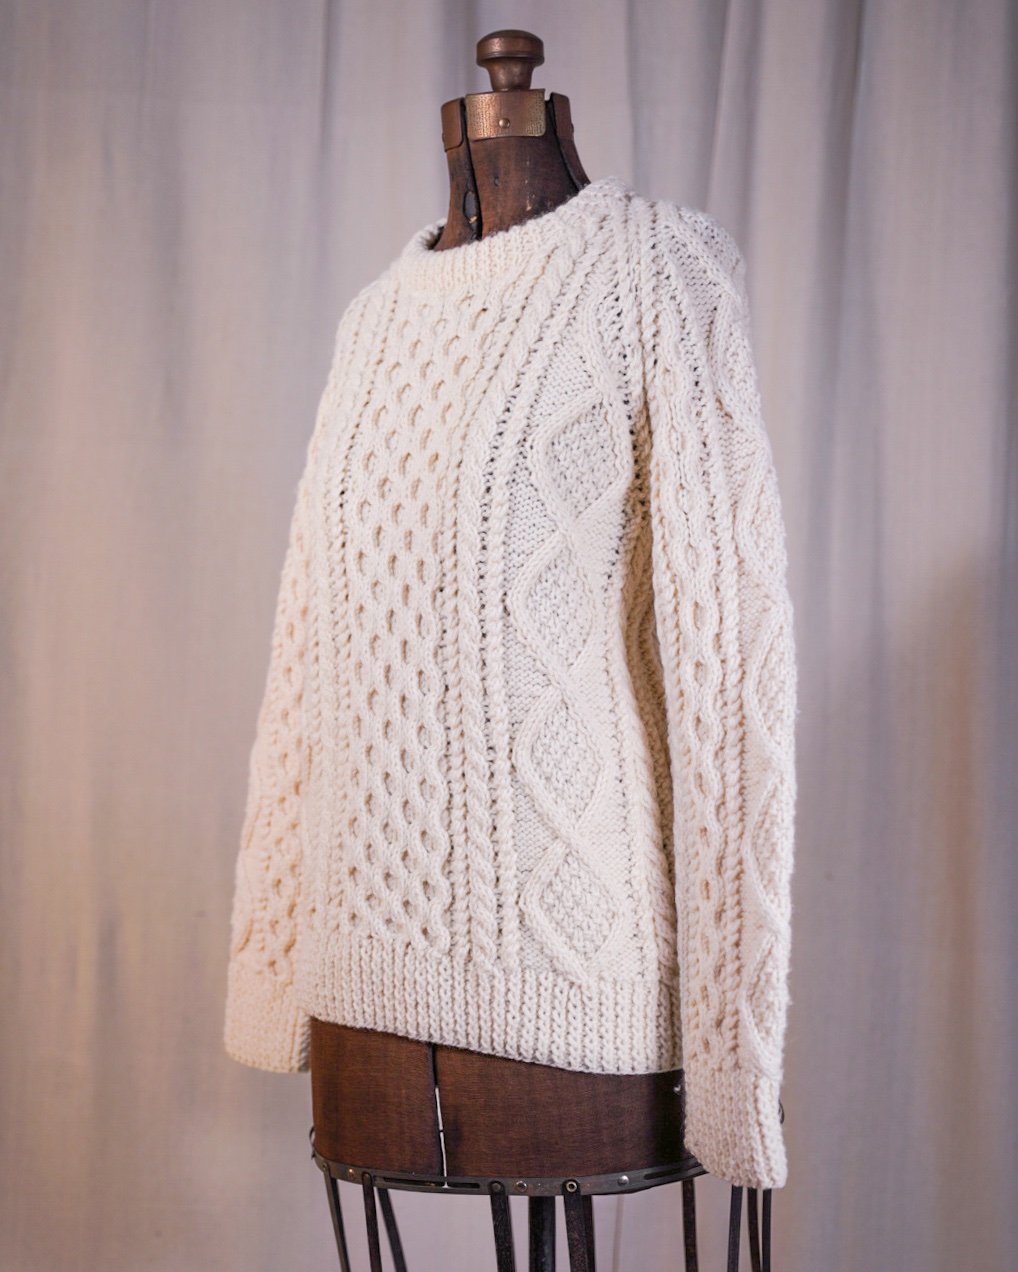 Vintage Wool Sweater - October House Vintage